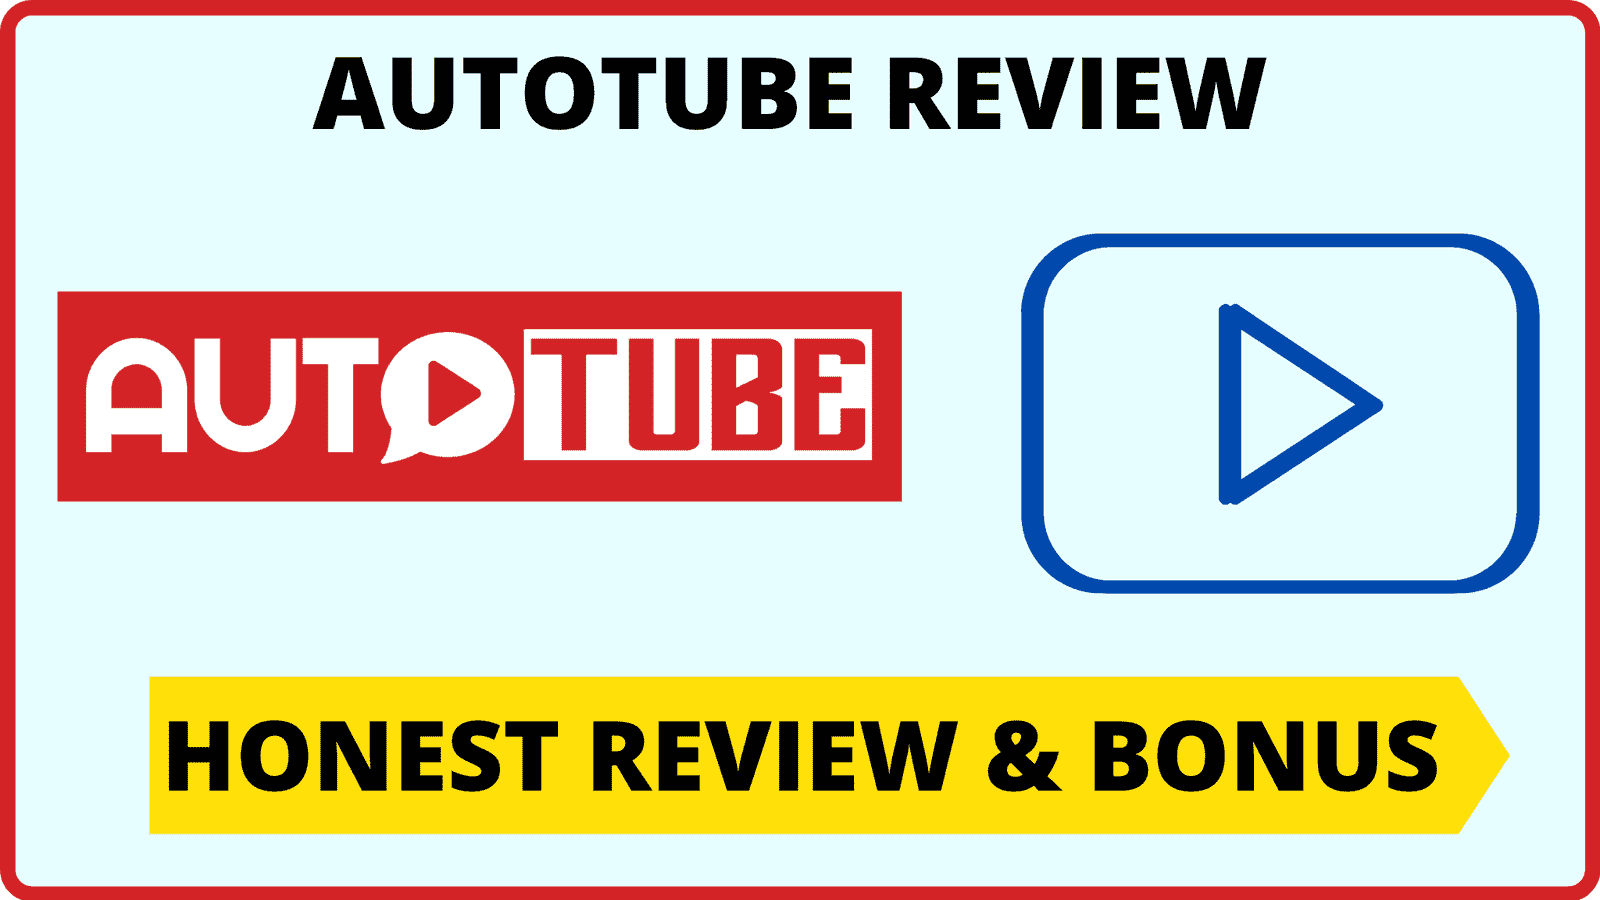 AutoTube Review